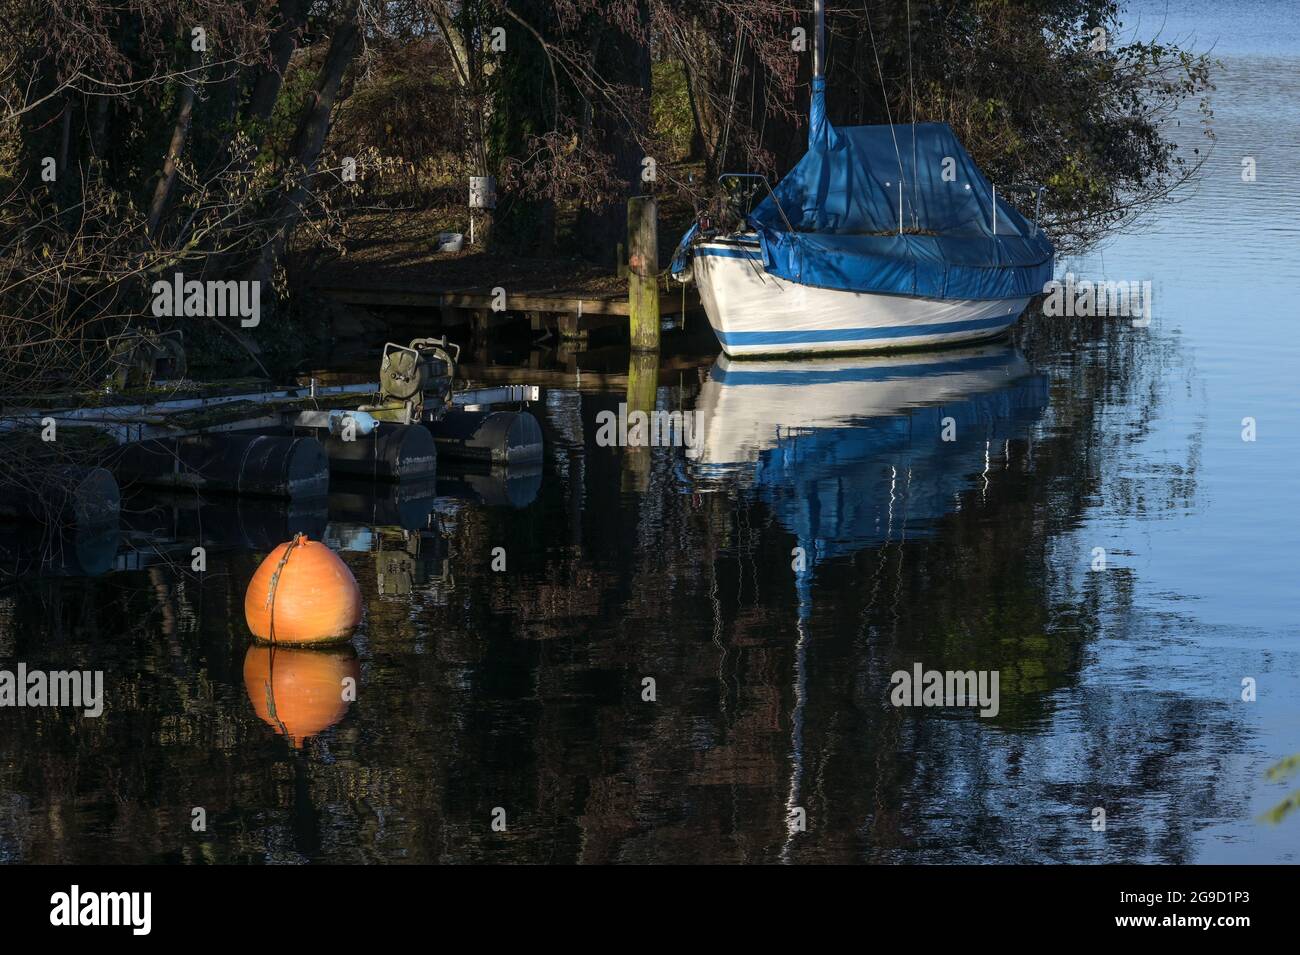 Velero cubierto con tarpaulin azul y una boya naranja en el lago a la orilla, concepto de actividad de ocio, espacio de copia, foco seleccionado, profundidad estrecha Foto de stock